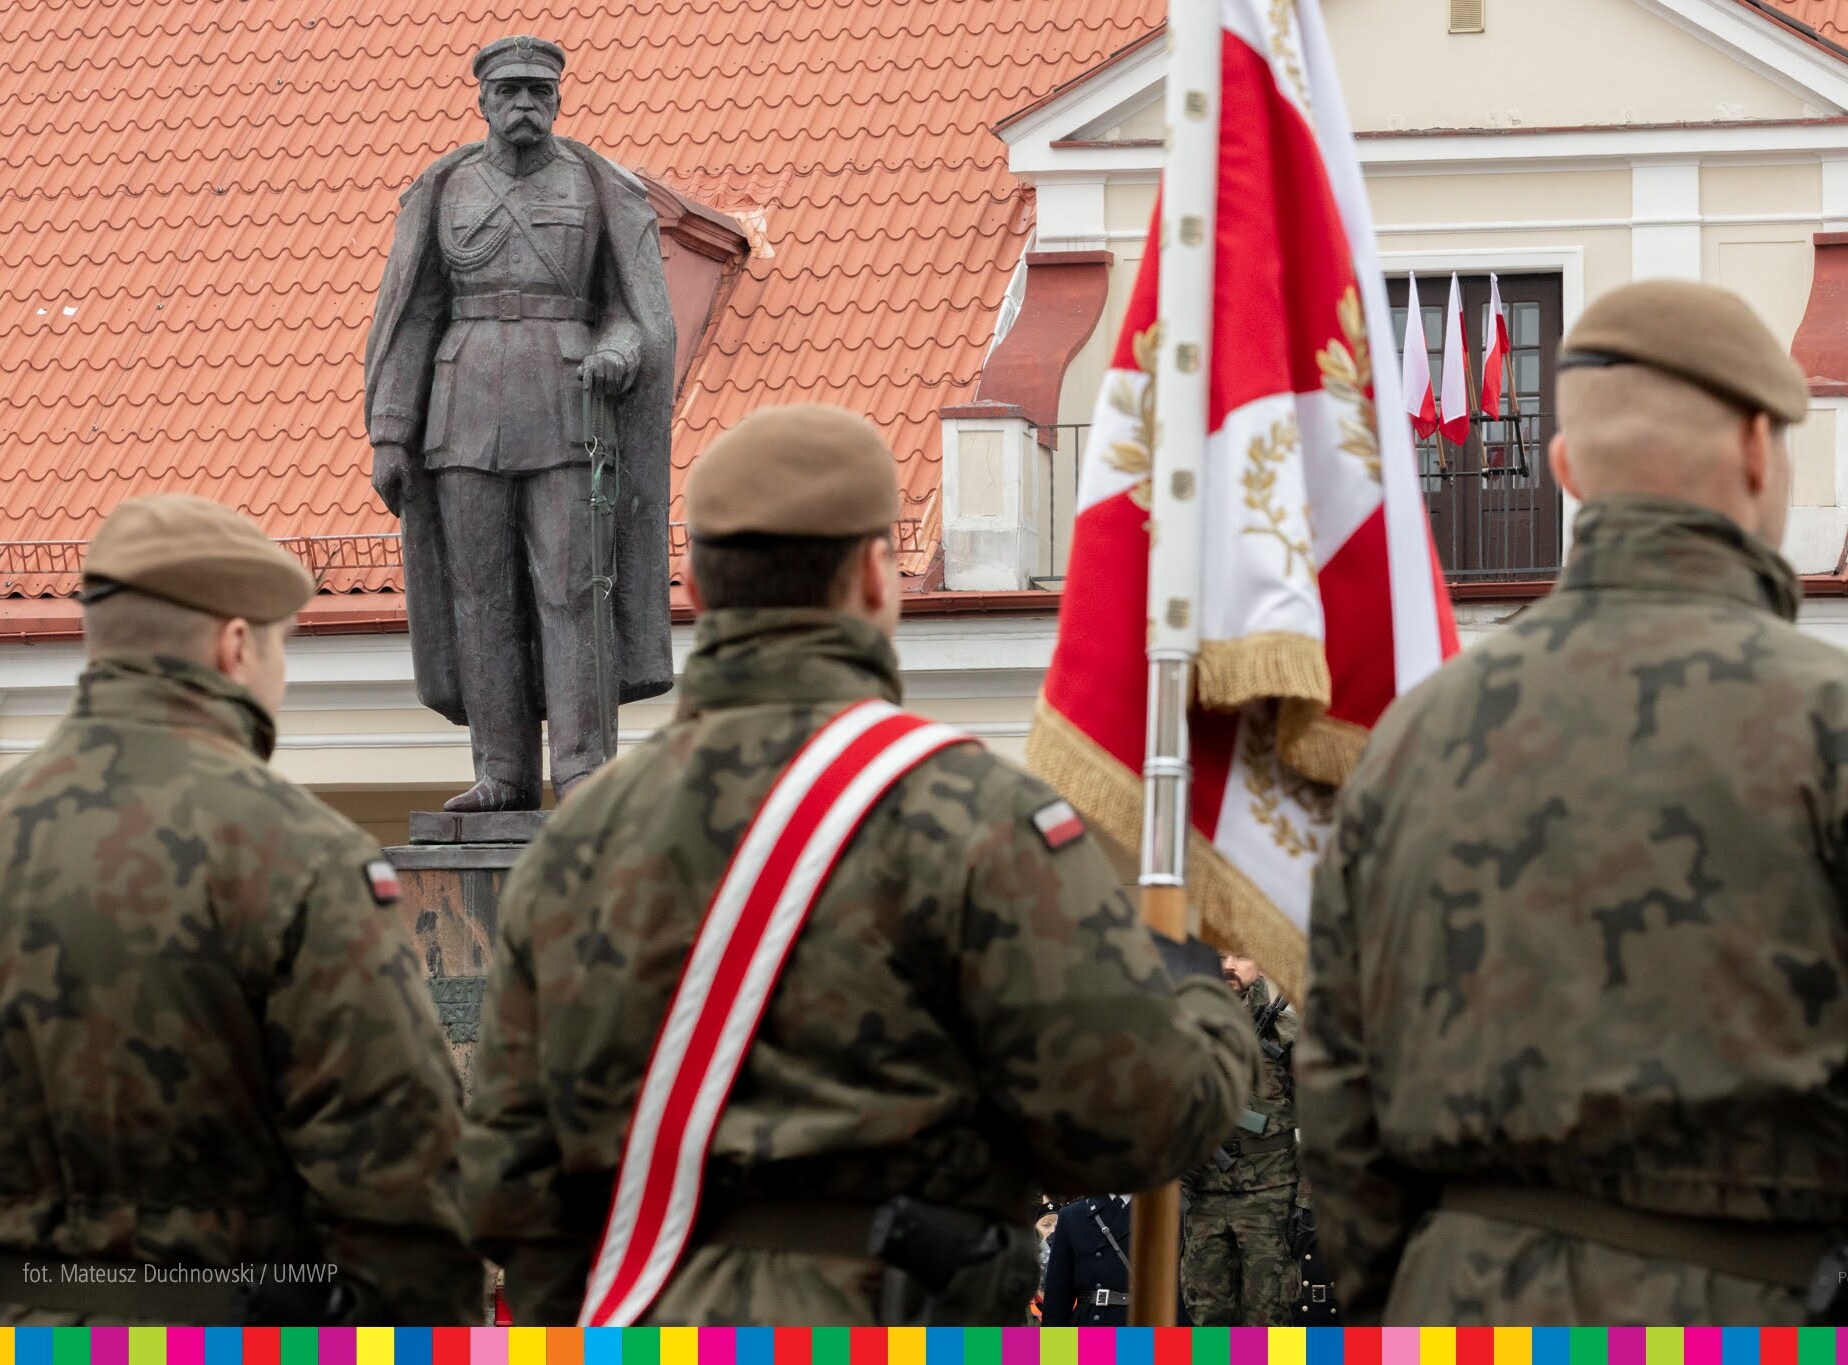 Pomnik Marszałka Józefa Piłsudzkiego, tyłem stojący poczet sztandarowy w mundurach